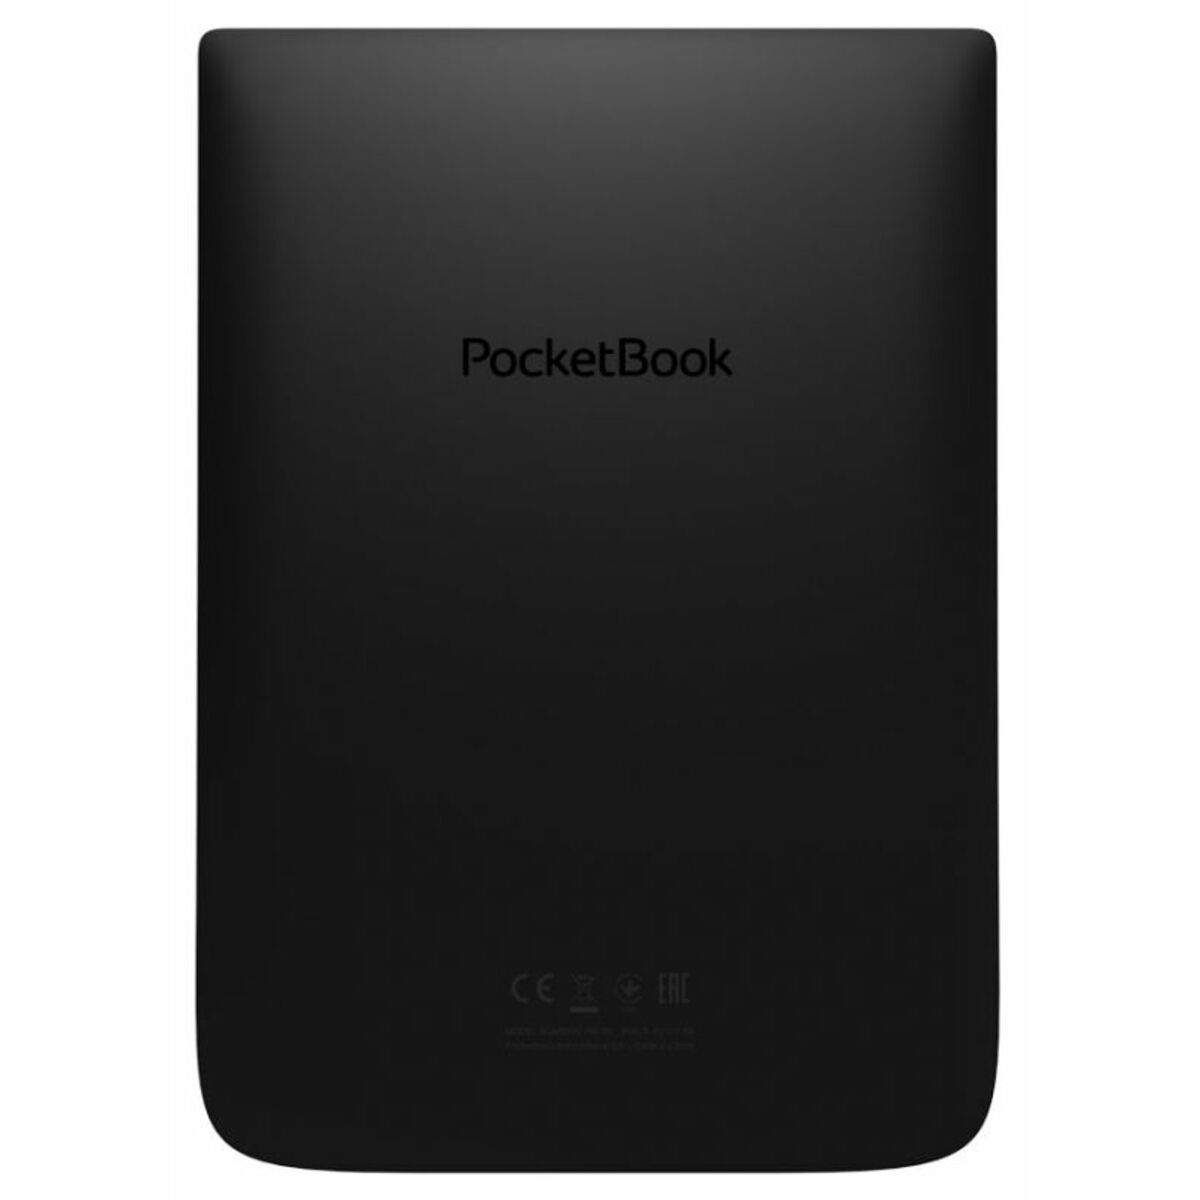 Электронная книга PocketBook 740 (Цвет: Black)